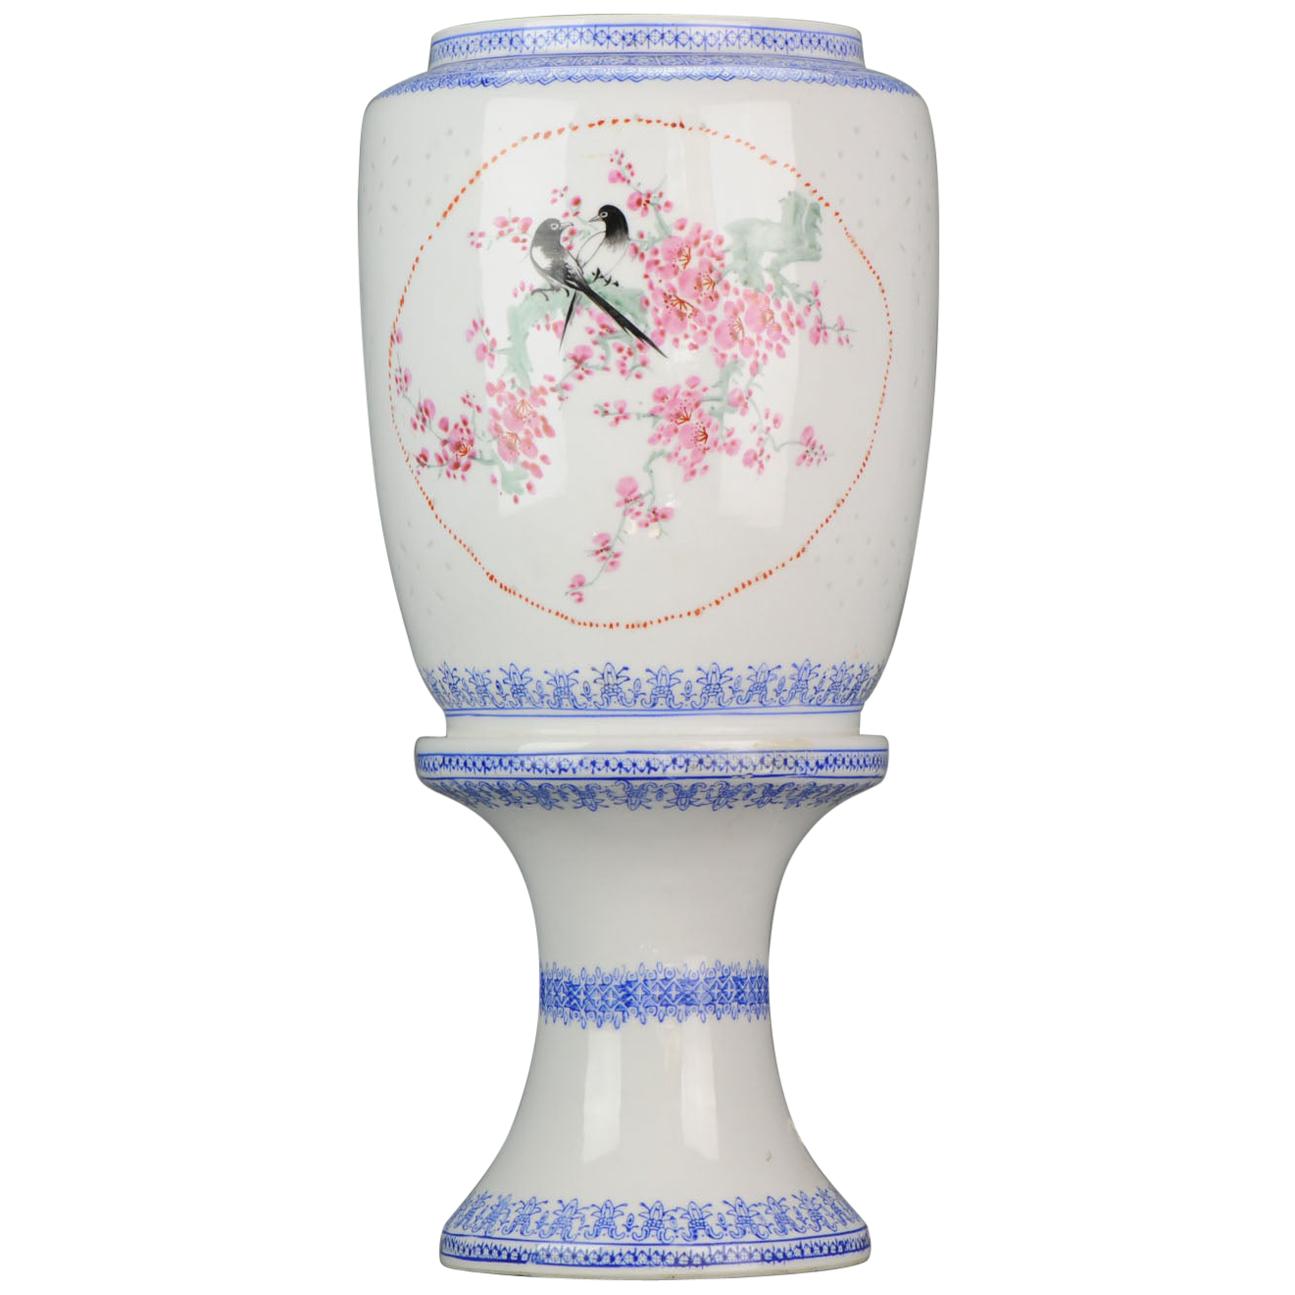 Lampe Jingdezhen PRoC du 20ème siècle en porcelaine coquille d'œuf avec motif oiseaux, marque chinoise